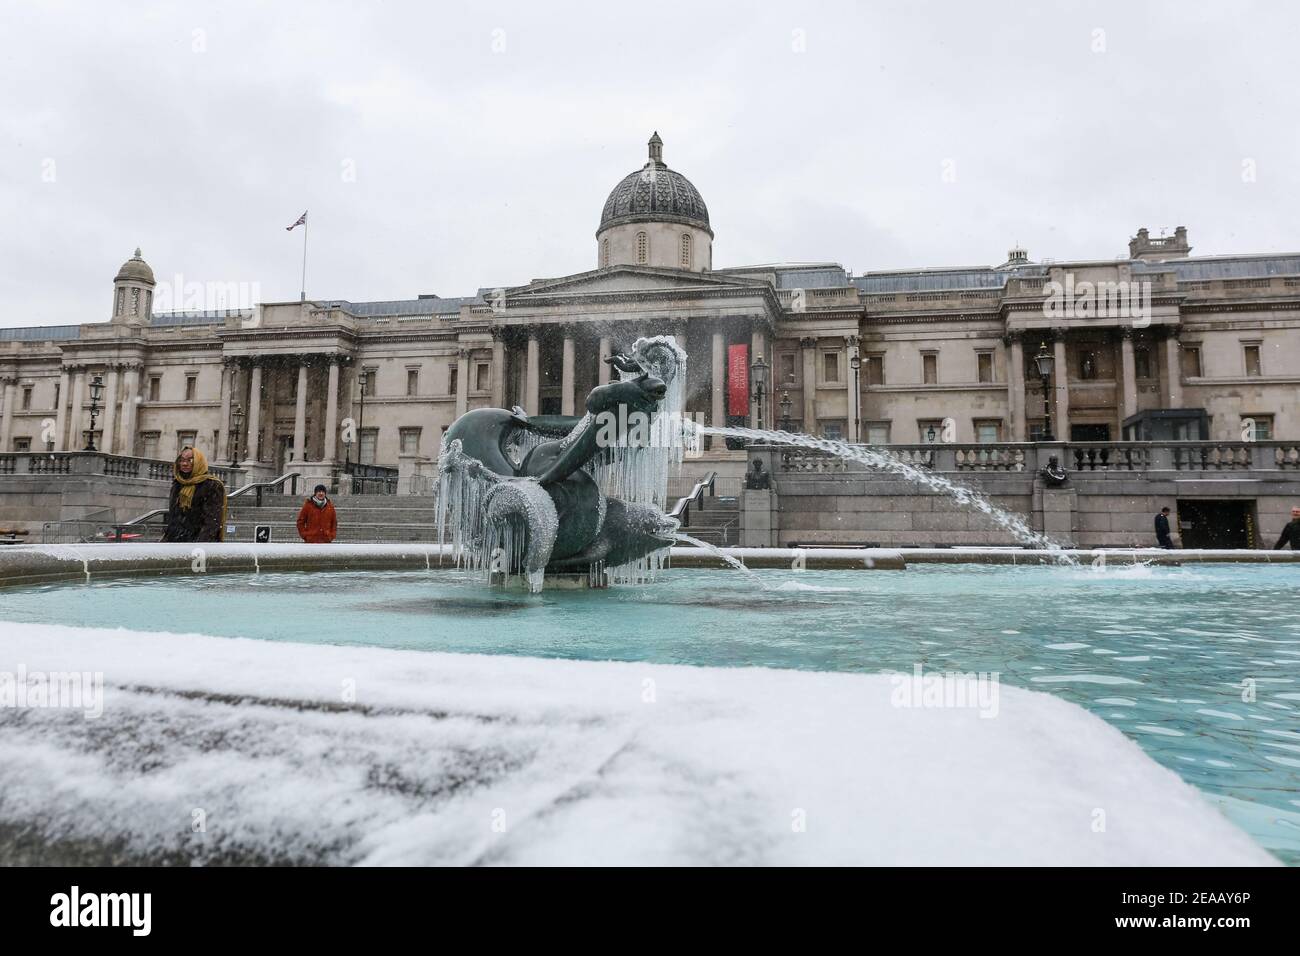 Londra, Regno Unito. 08 Feb 2021. UK Weather: Una fontana ghiacciata in Trafalgar Square. Tempo freddo causato da Storm Darcy. Credito: Waldemar Sikora Foto Stock